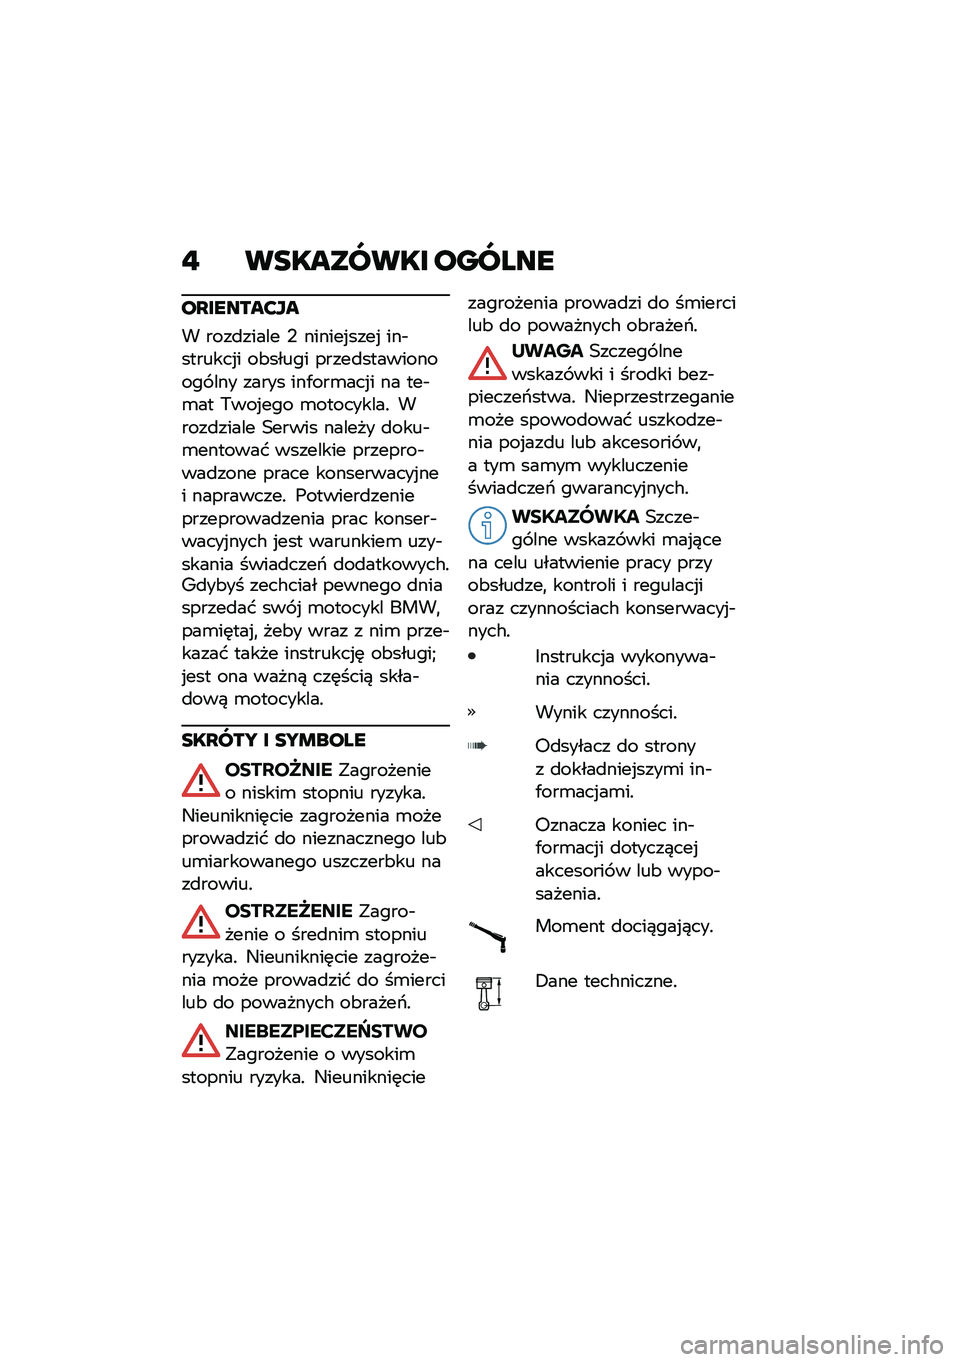 BMW MOTORRAD R NINE T SCRAMBLER 2020  Instrukcja obsługi (in Polish) �" ��������� ������
��Q������?��
� ����
����� �, ������%����% ���$�������%� ��&����� �����
����������� ��� ����� ���.��